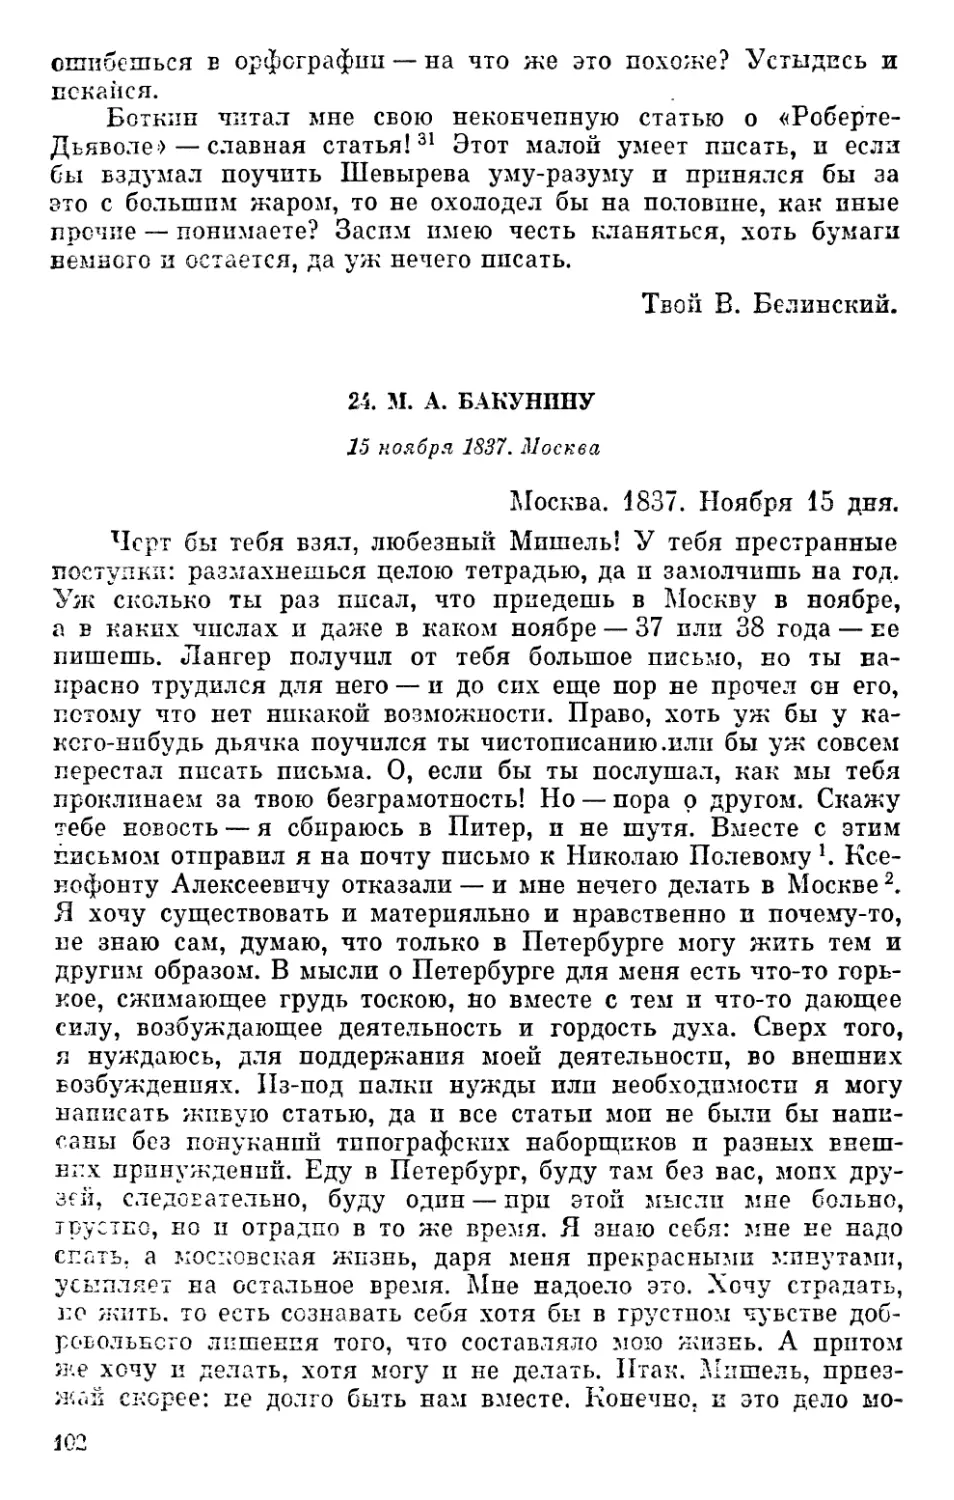 24. М. А. Бакунину. 15 ноября 1837